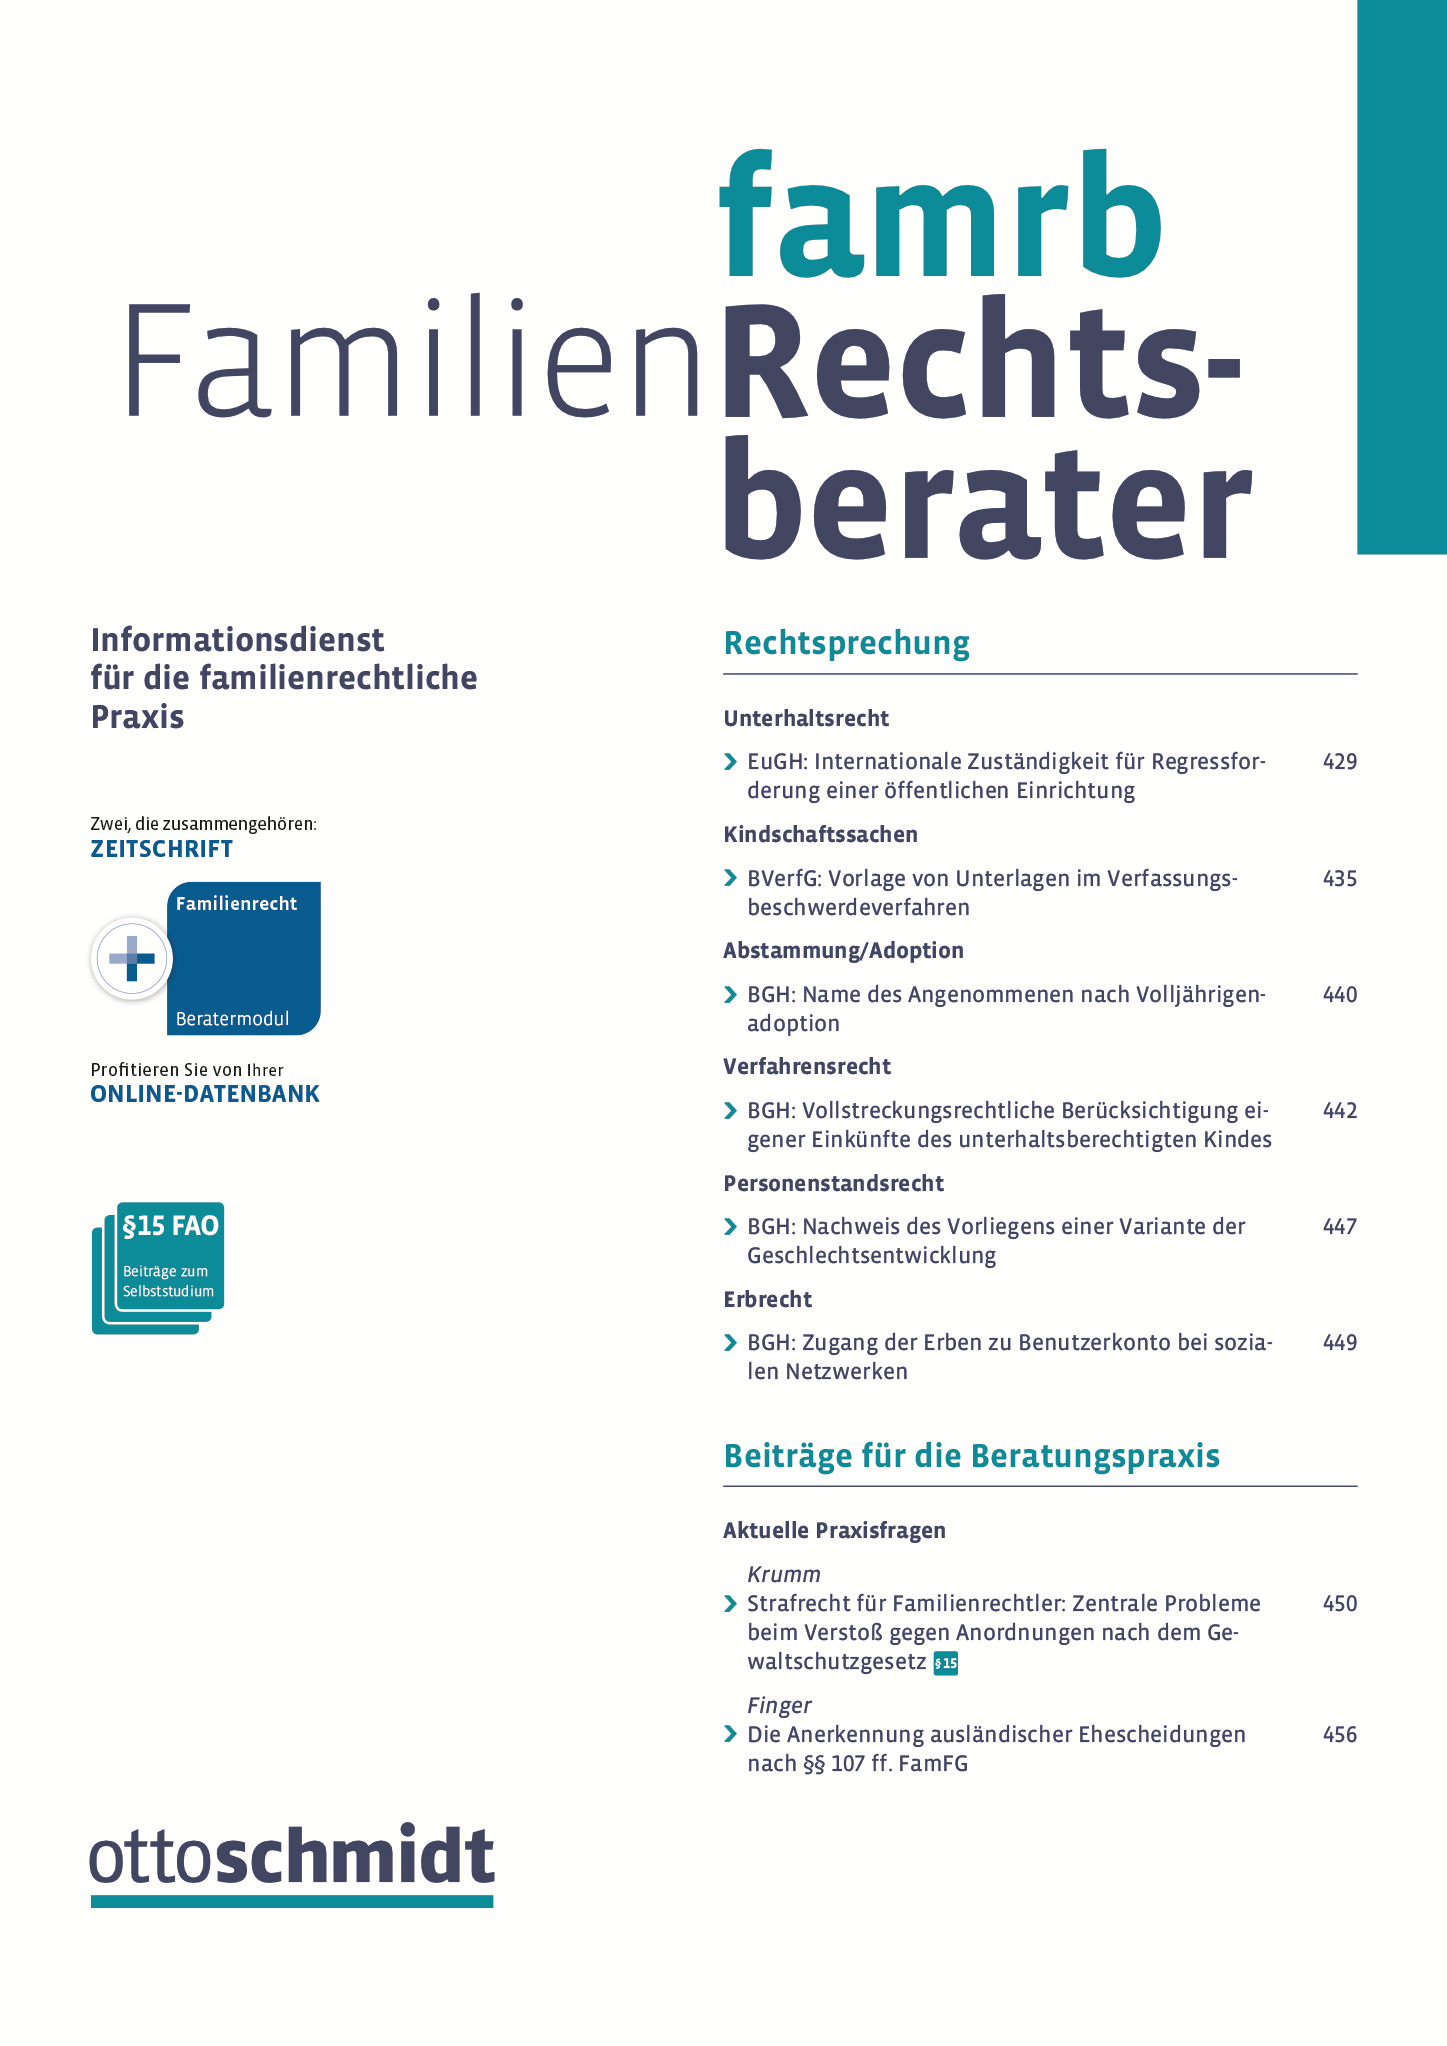 Abbildung: Familien-Rechtsberater (FamRB)